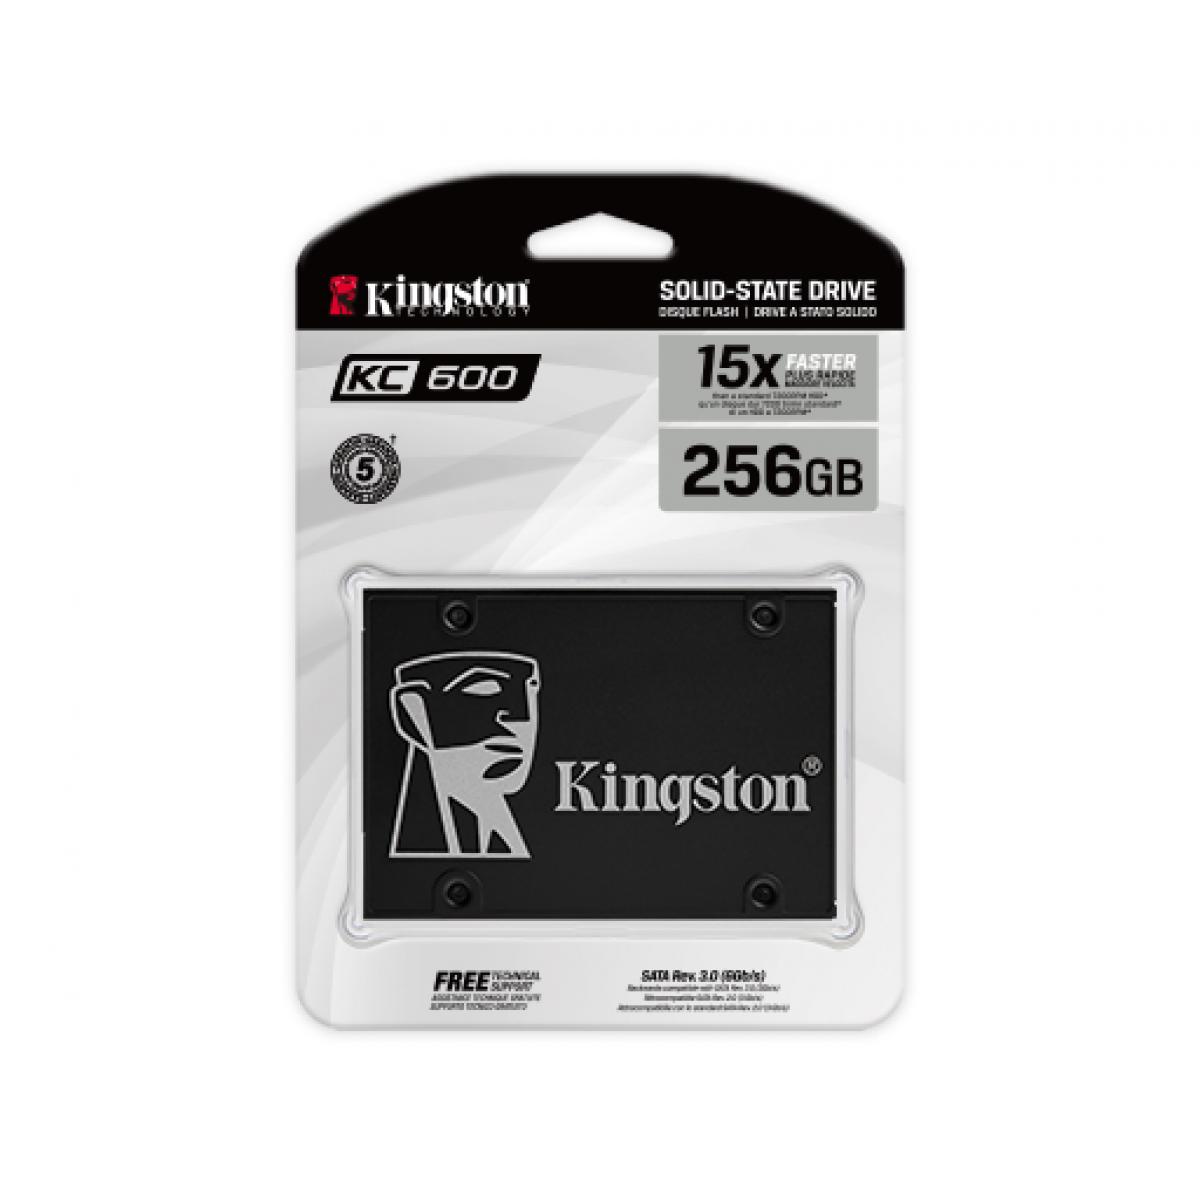 Kingston KC600 SSD 256GB x15 photo 